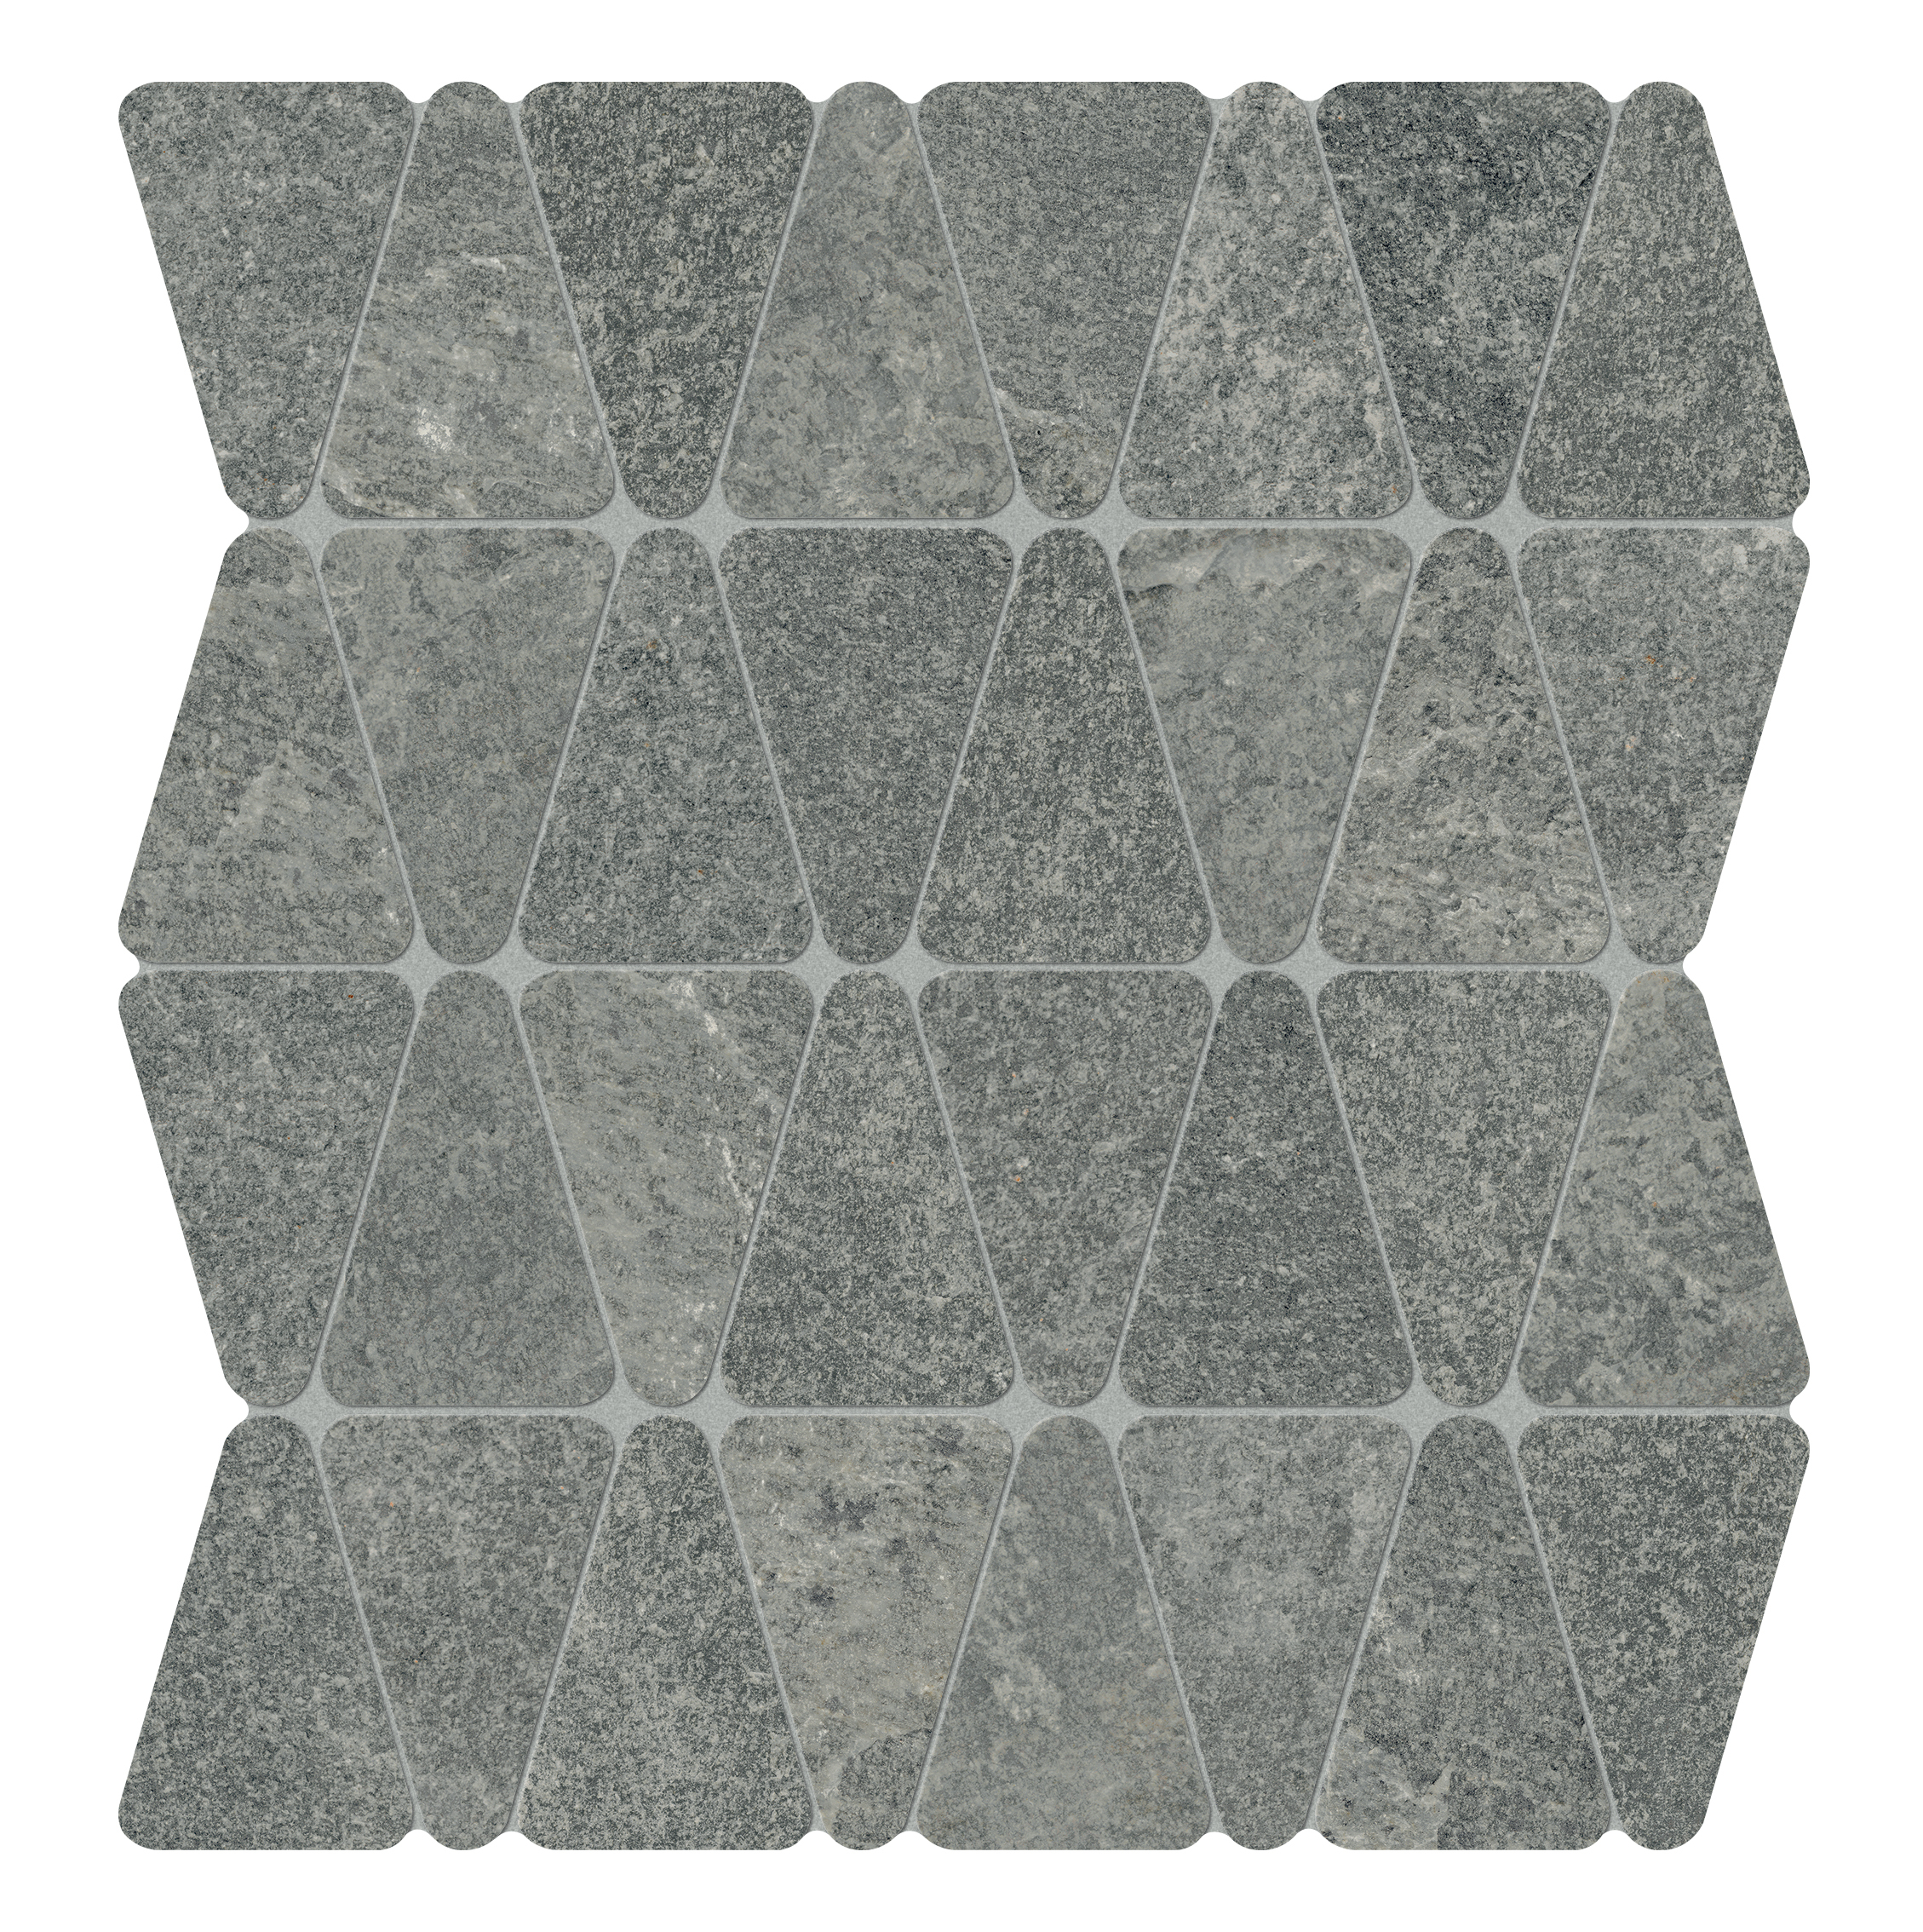 Marcacorona Graphite Strutturato Hithick Triangle Tessere J096 31x34,5cm rectified 9mm